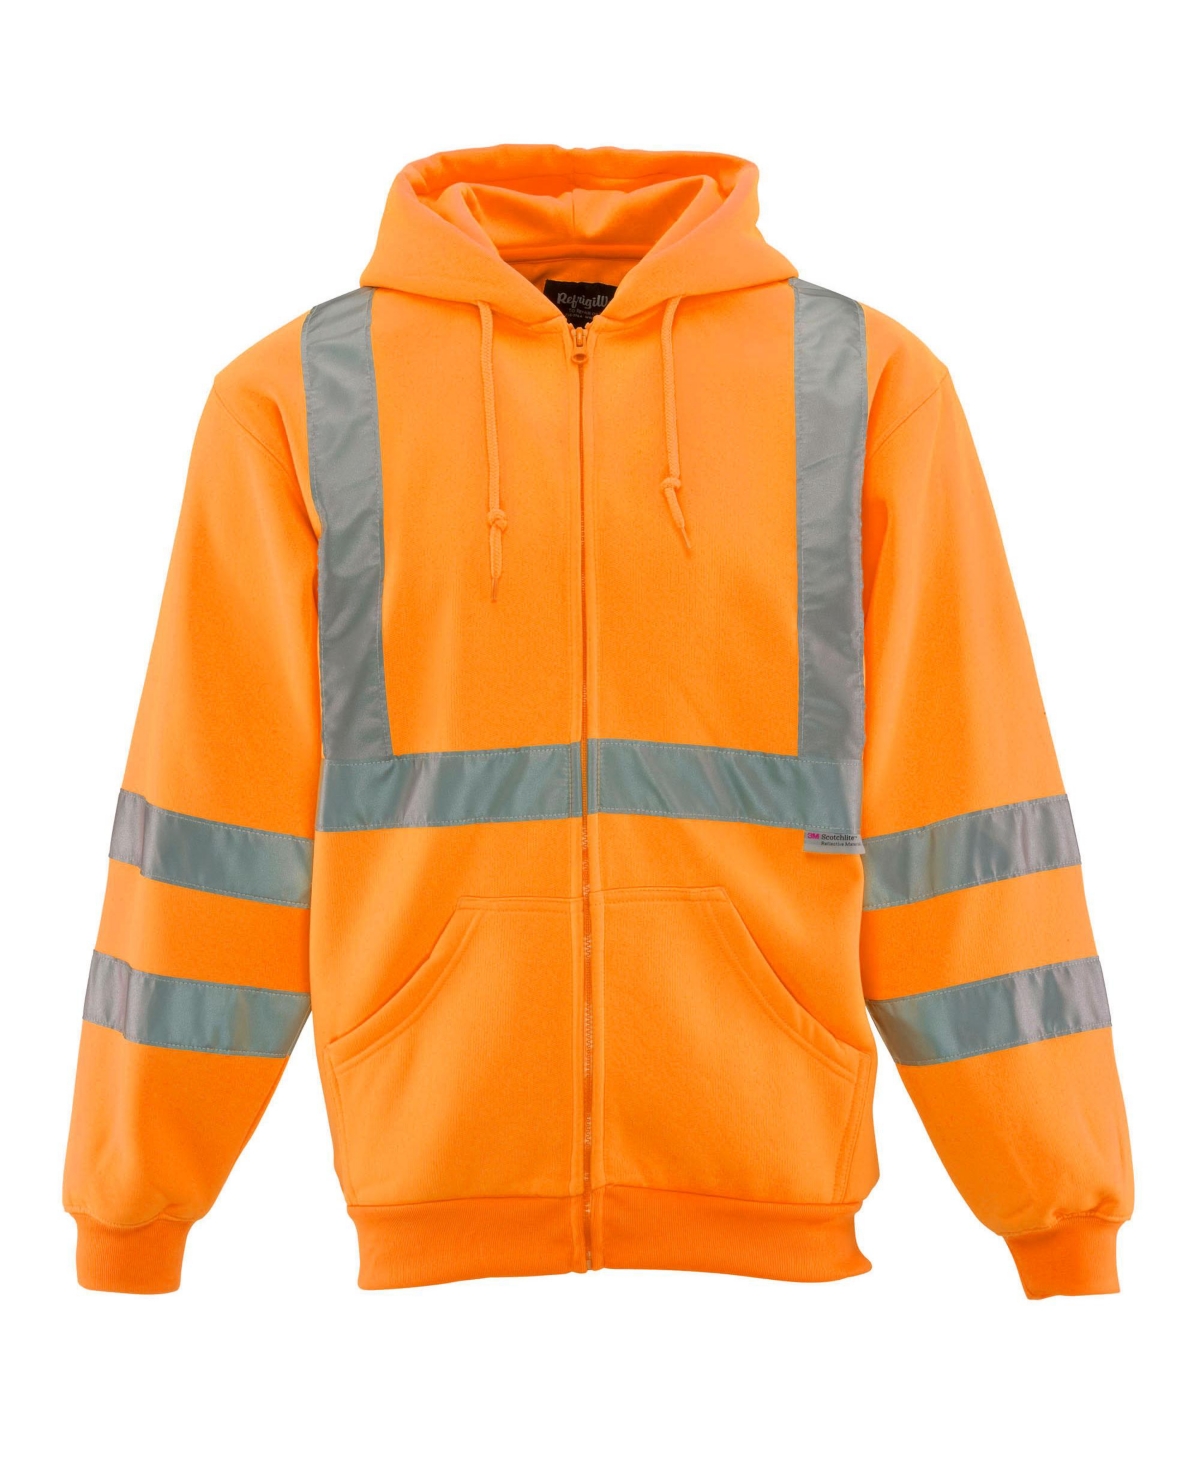 Big & Tall Hi Vis Fleece Hooded Sweatshirt - Orange